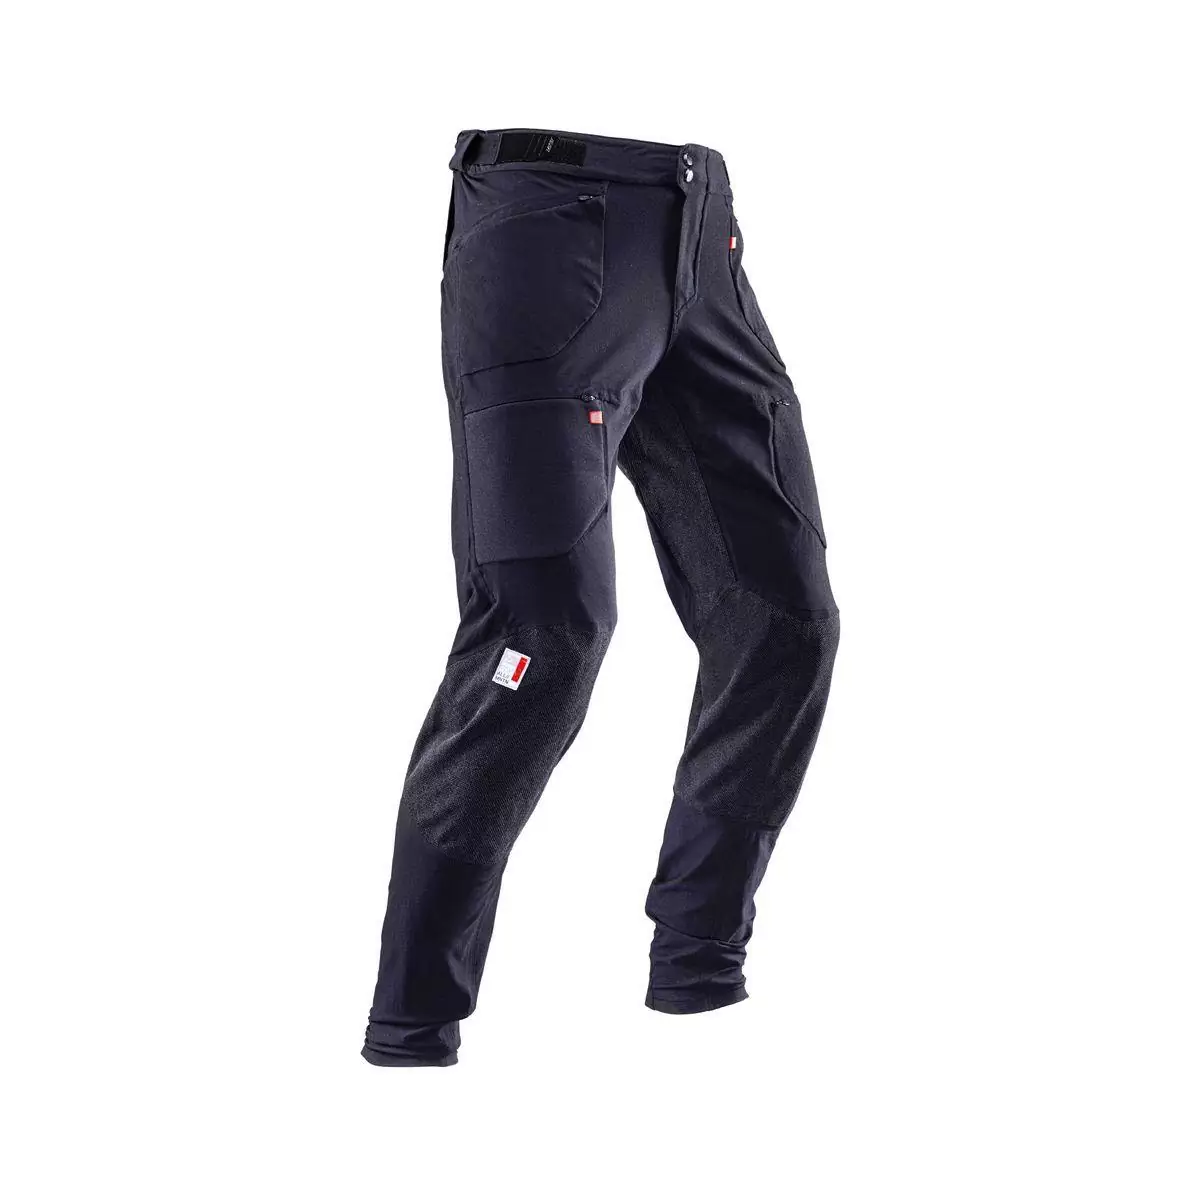 Pantalones MTB Allmtn 4.0 Largos Negro Talla XXXL #2